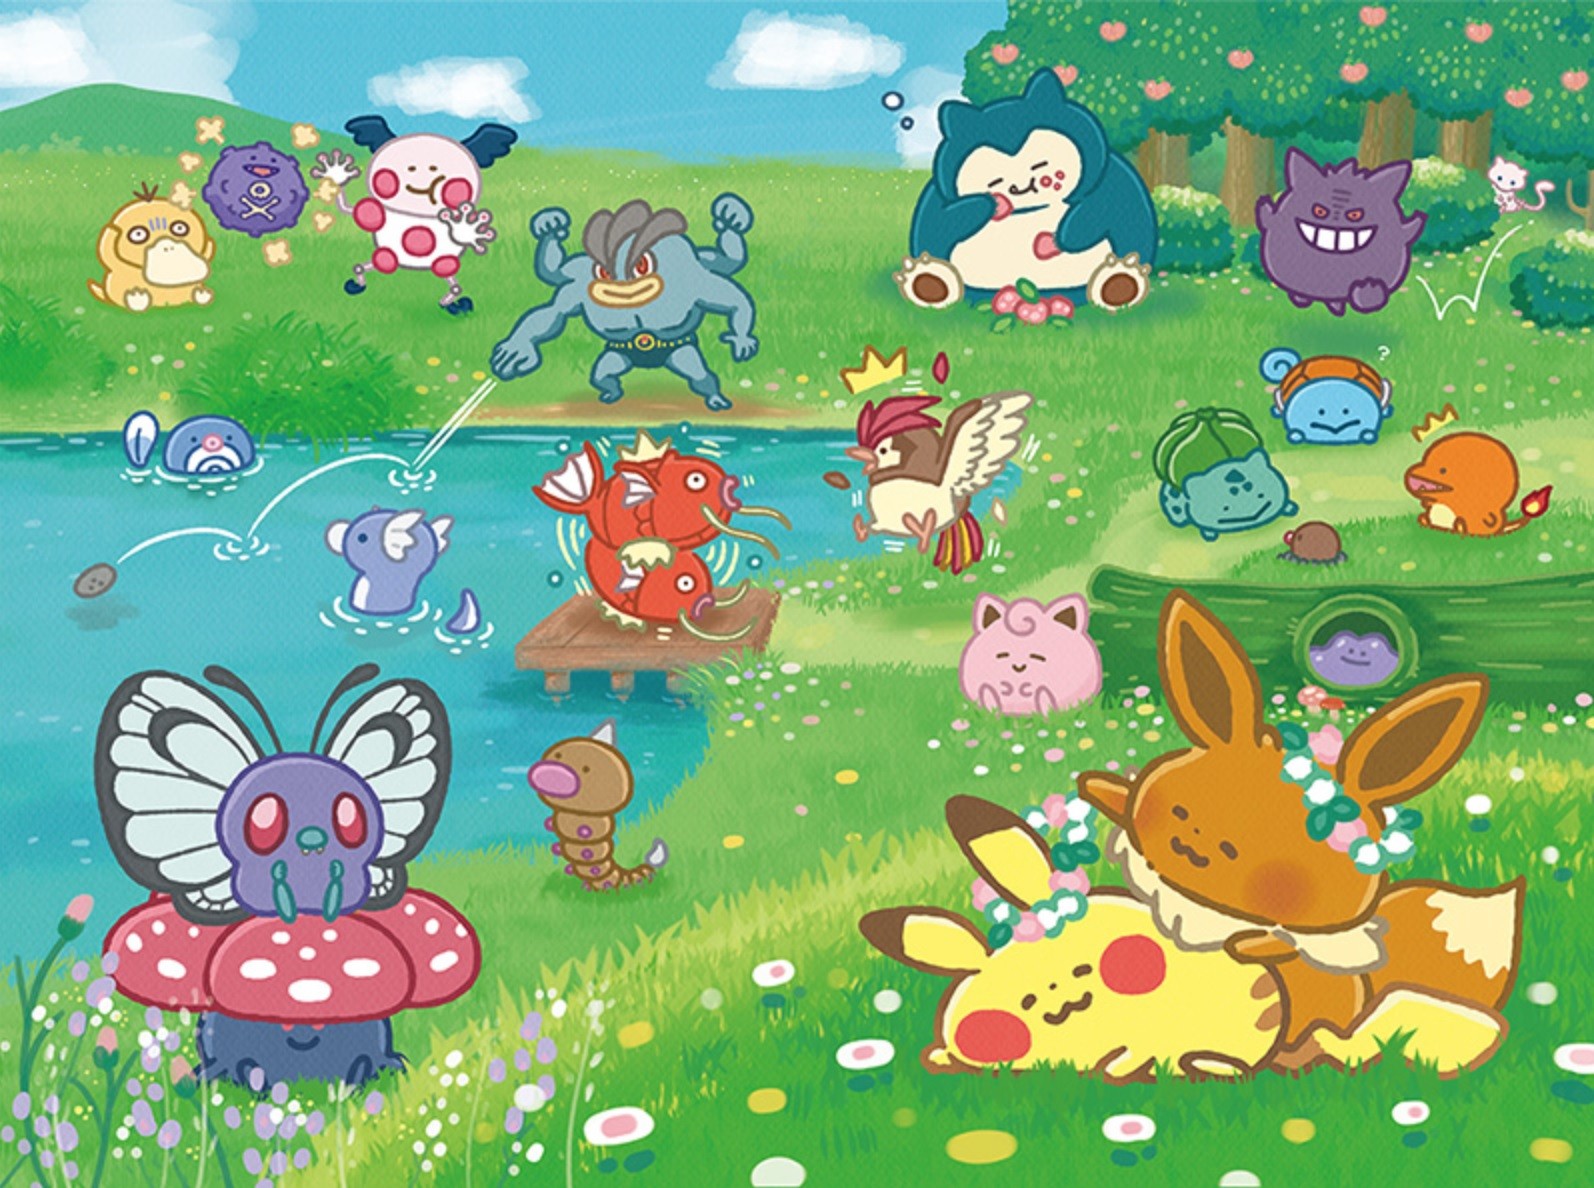 Loạt series “Pokémon Yurutto”: Không thể bỏ qua loạt series phim hoạt hình Pokemon Yurutto với những tình tiết hài hước, dễ thương hấp dẫn đến từ xứ sở hoa anh đào. Hãy cùng theo dõi những chuyến phiêu lưu kỳ thú của Satoshi và Pikachu trên đất Nhật, và khám phá nét đặc trưng của văn hóa Nhật Bản trong mỗi tập phim.